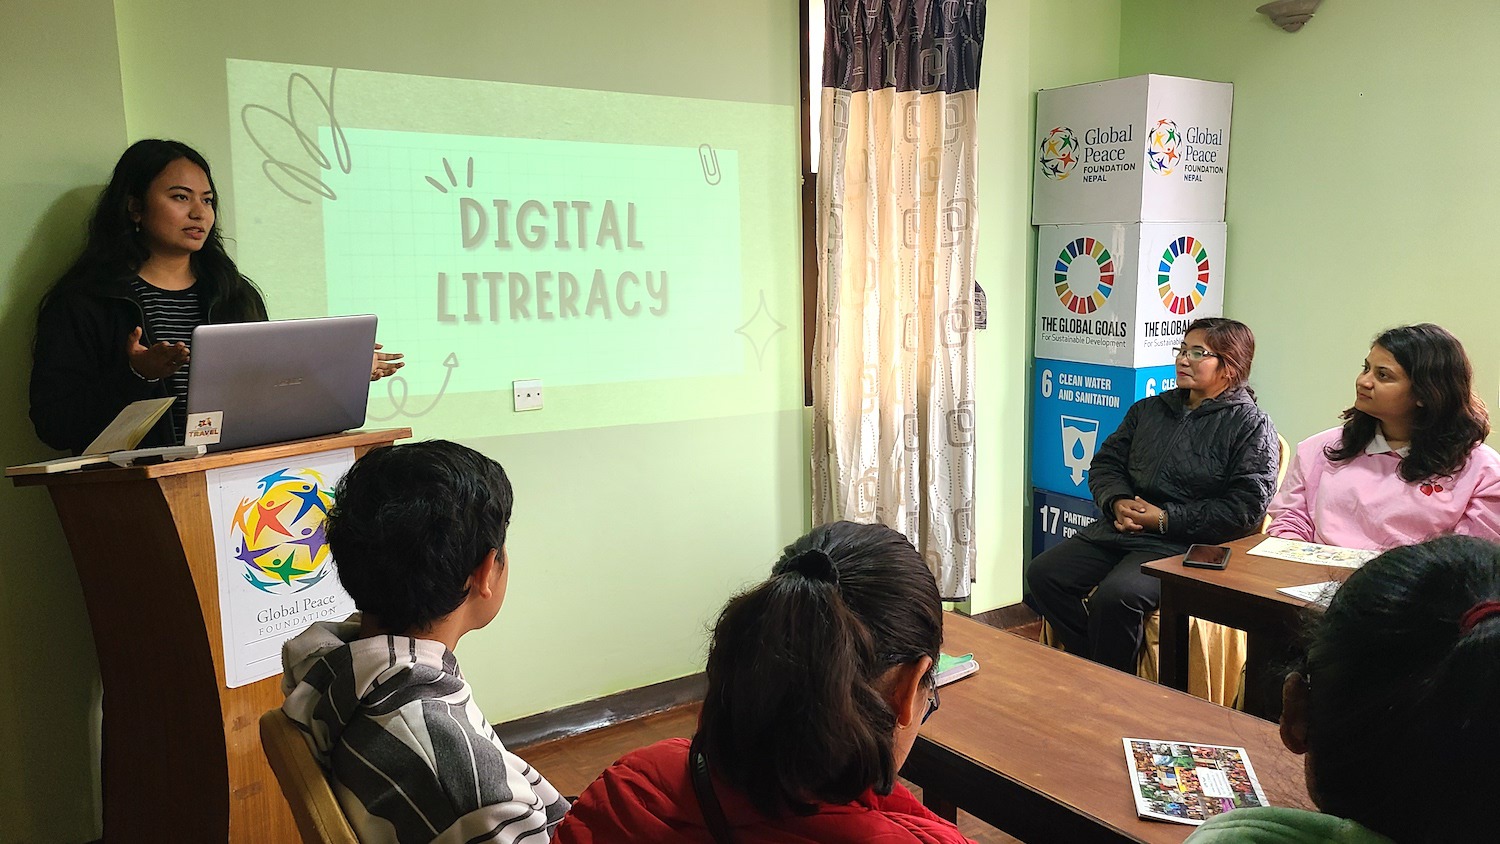 Raksha Adhikari presenting on the topic of "digital literacy" for fellow Global Peacebuilders.